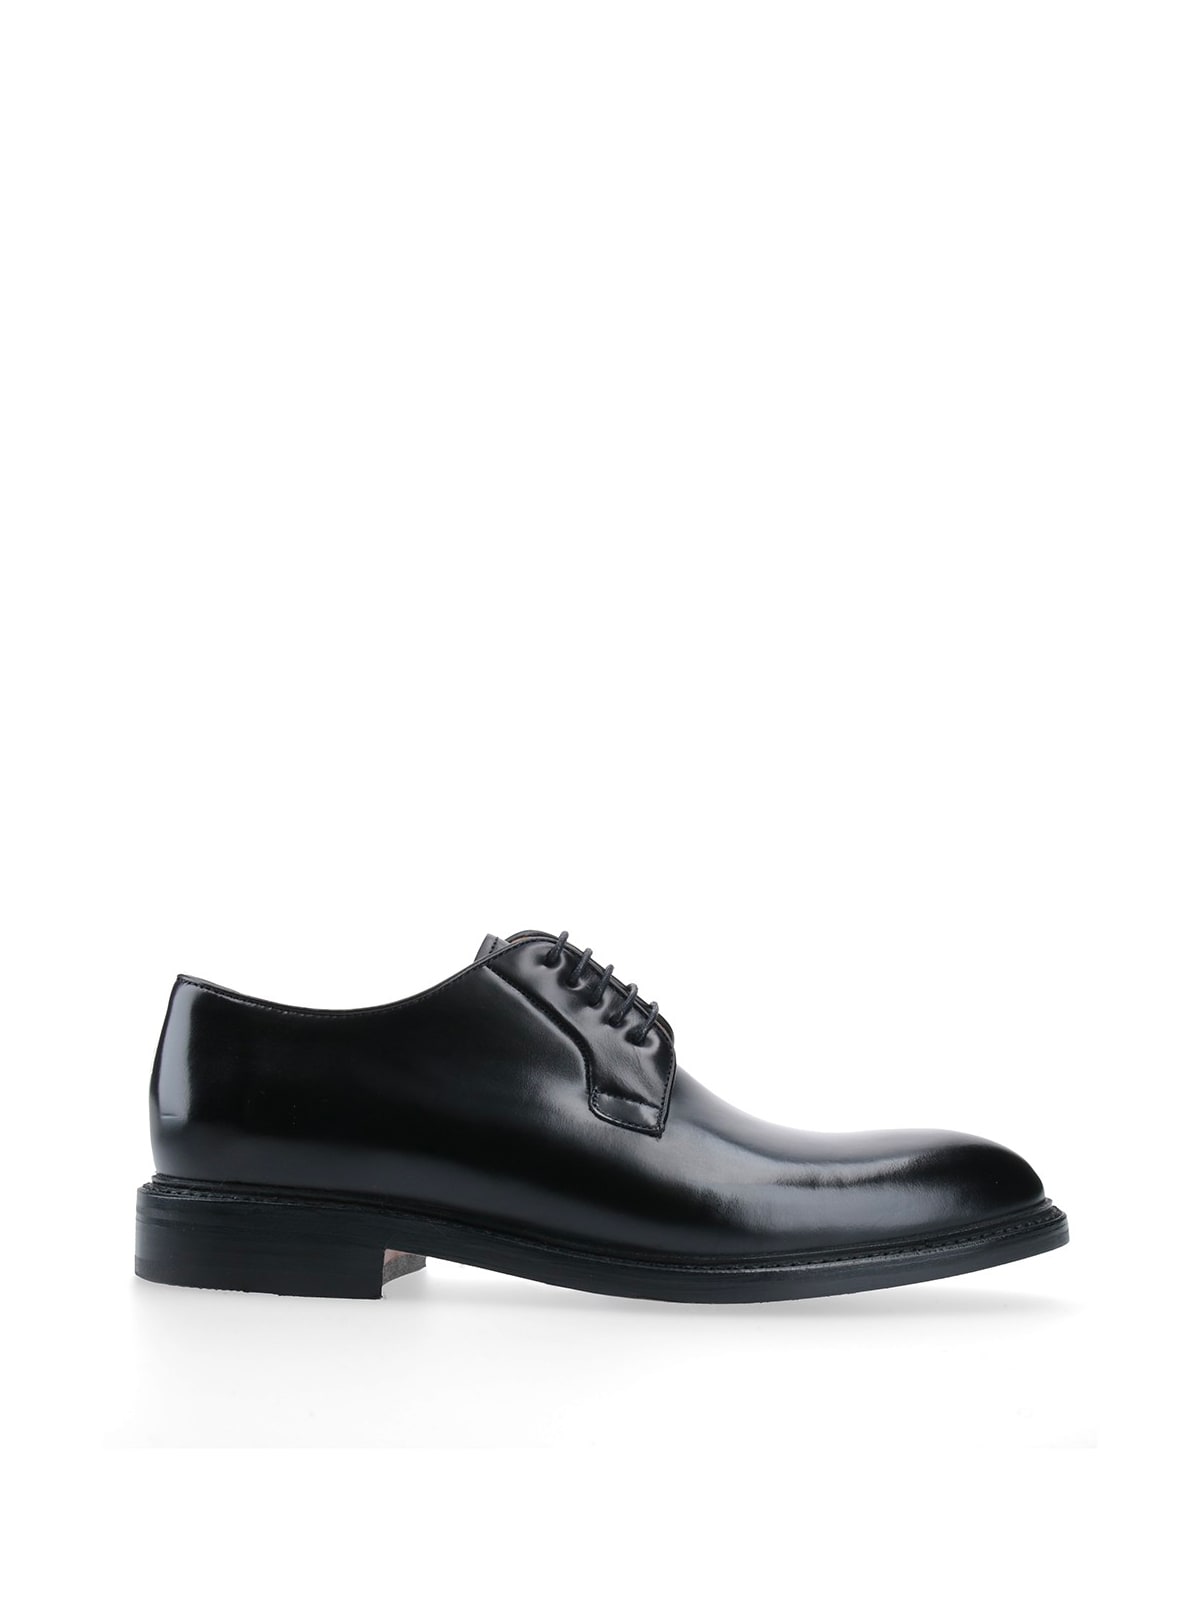 Berwick 1707 Rois Black Lace Up Shoes